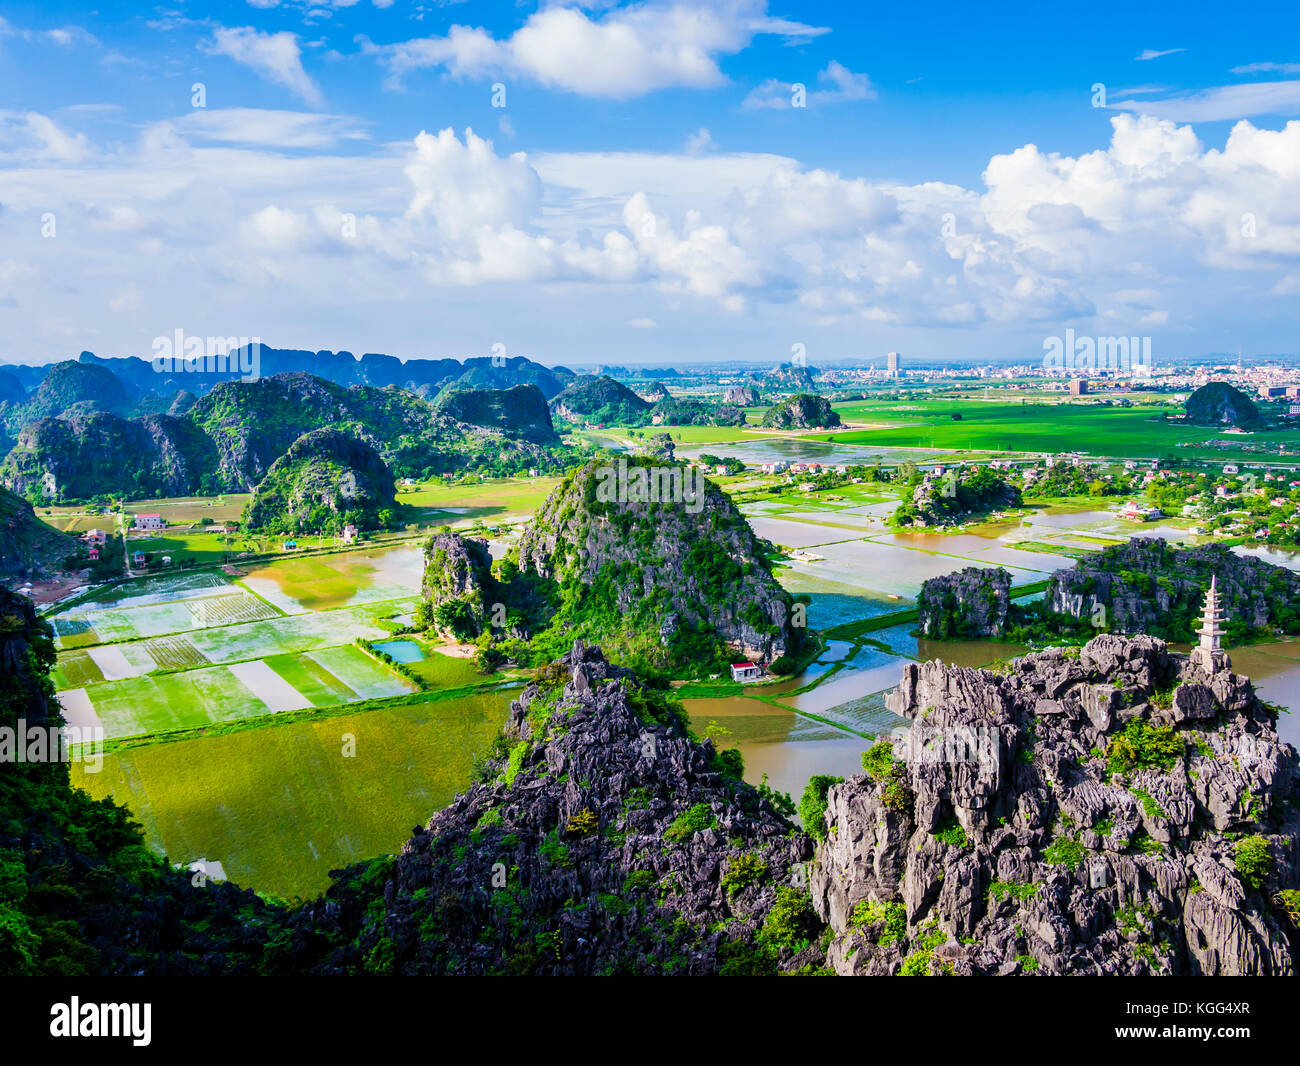 Vue panoramique de formations karstiques et de rizières dans la région de Tam Coc, province de Ninh Binh, Vietnam Banque D'Images